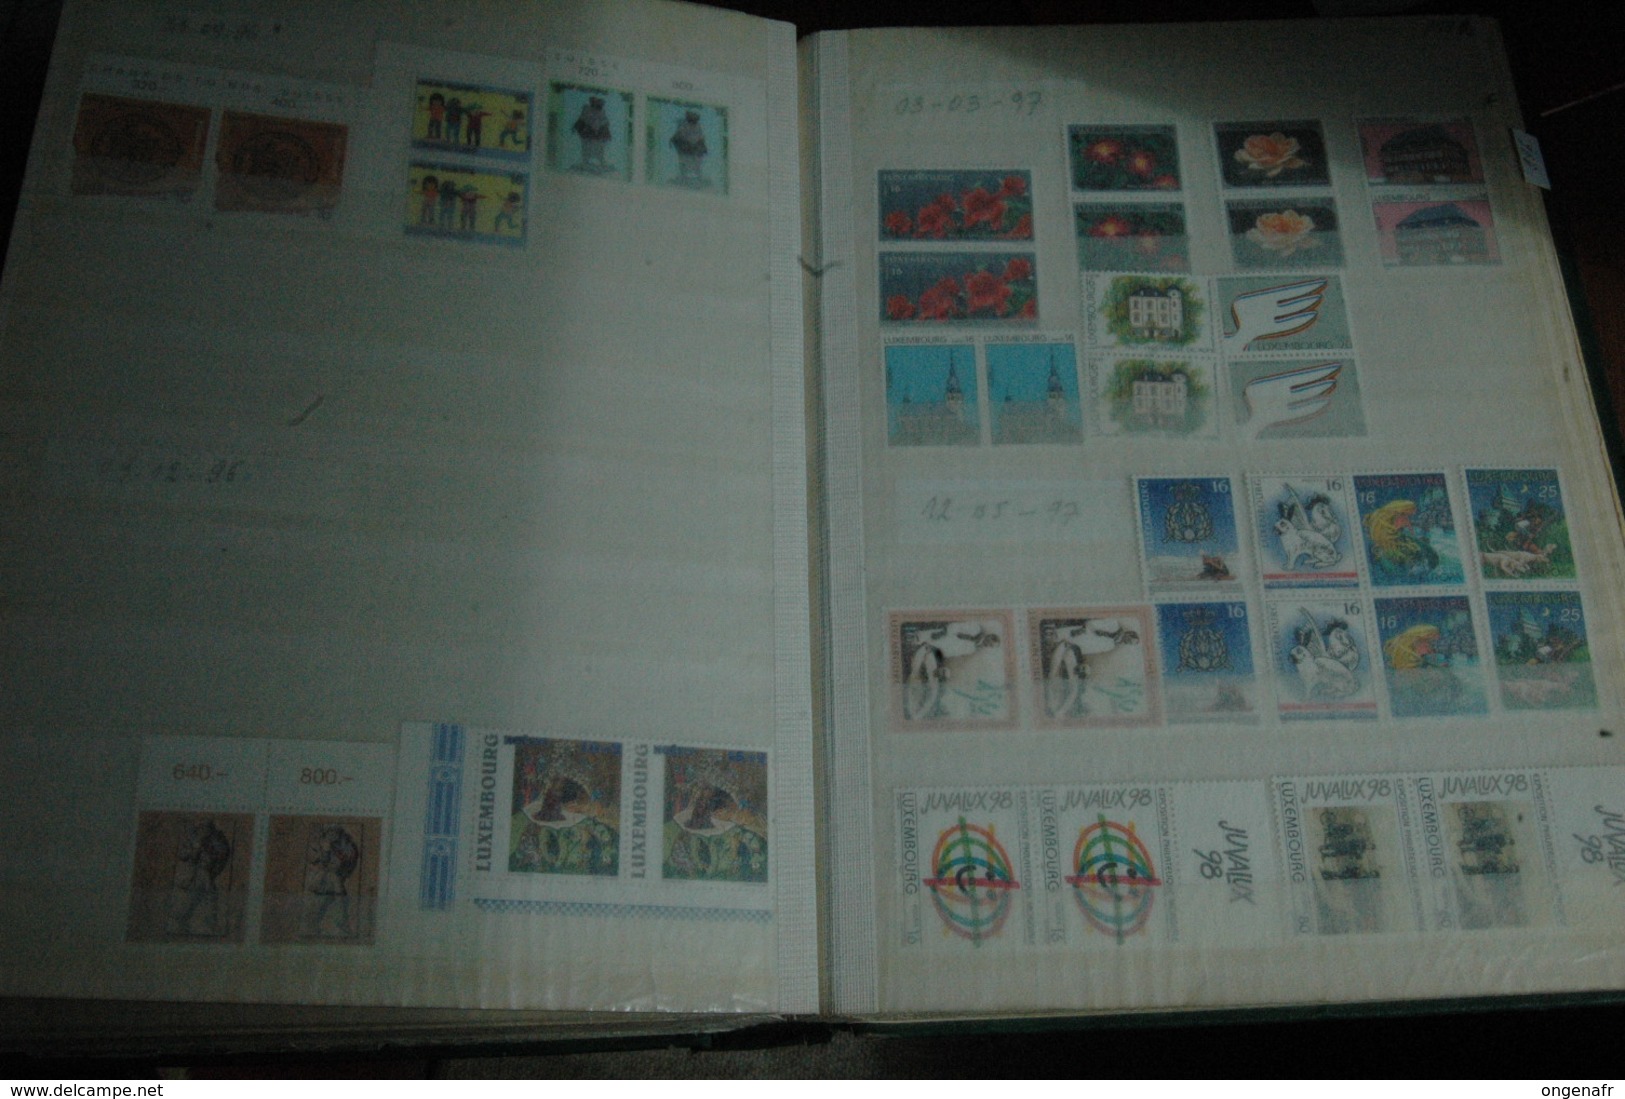 Classeur de 24 pages de stock ( timbres **) début pas compté--   de 1970 à 1999 (Prifix, Côte 2009 : 2105€)